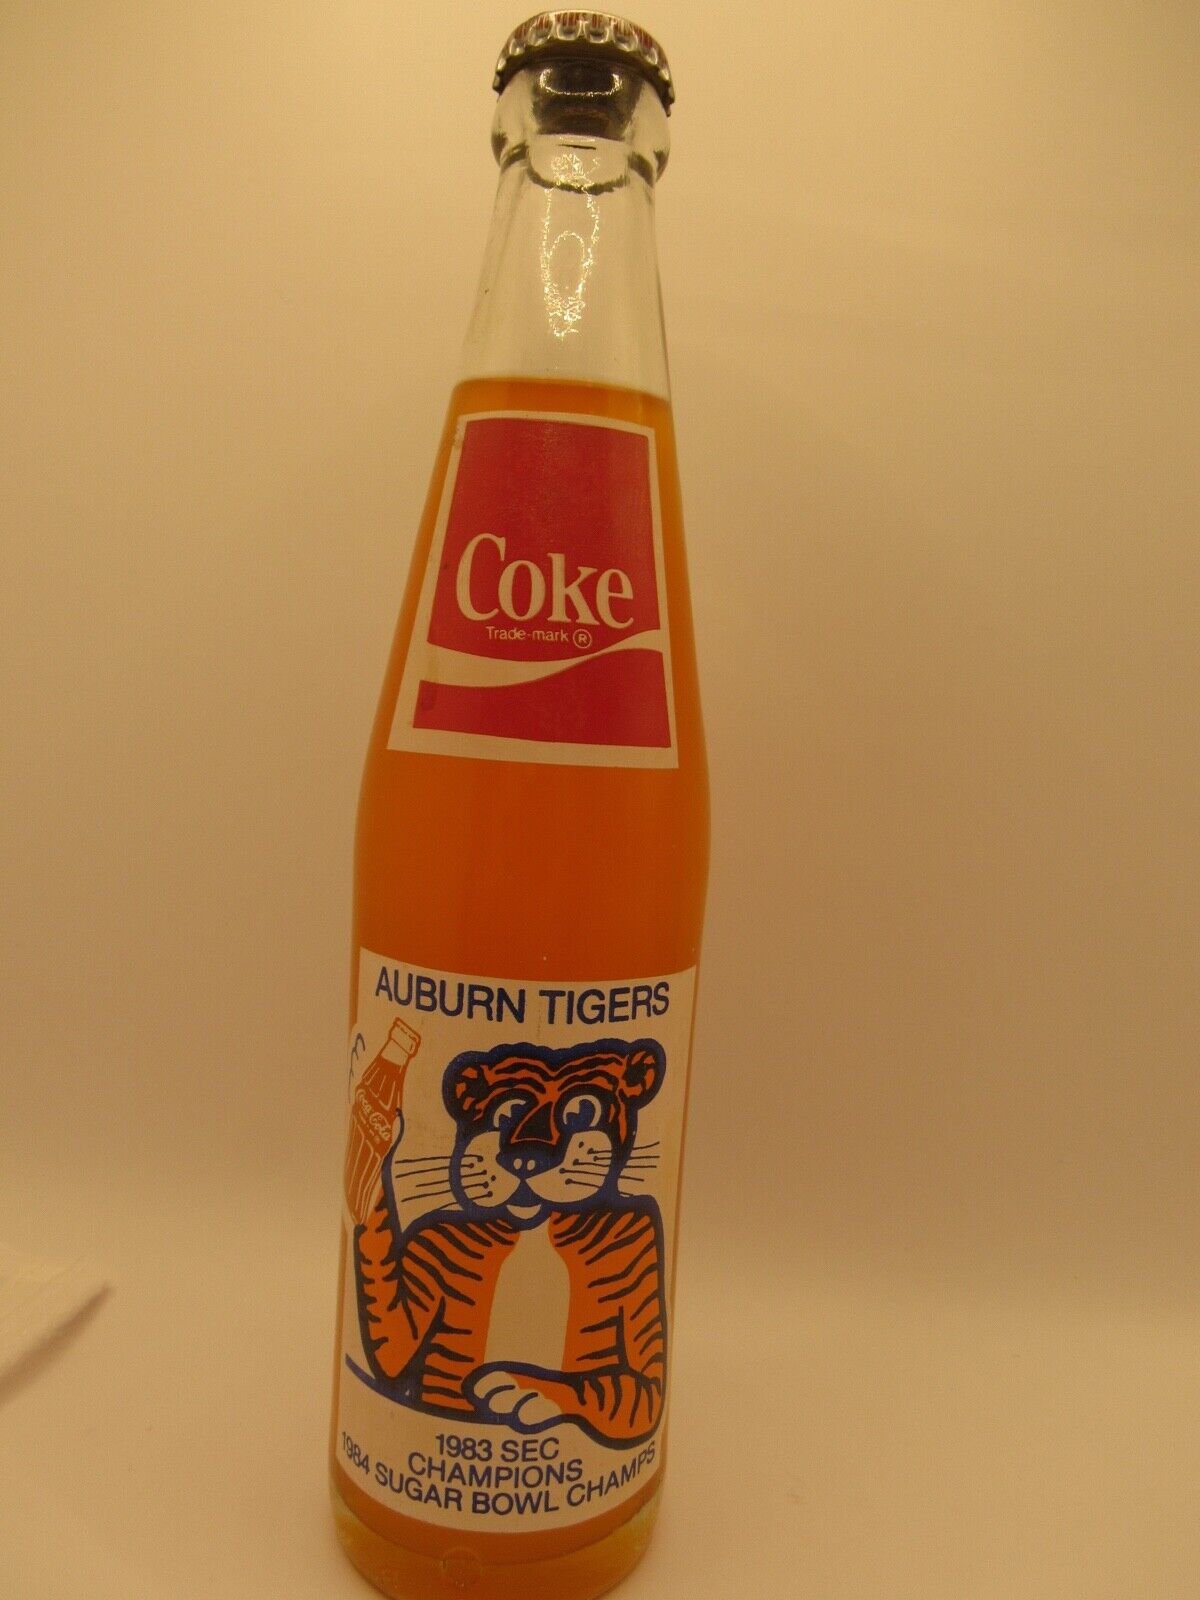 AUBURN TIGERS - Coca Cola Bottle  - 1983 SEC Football Champions - School Colors